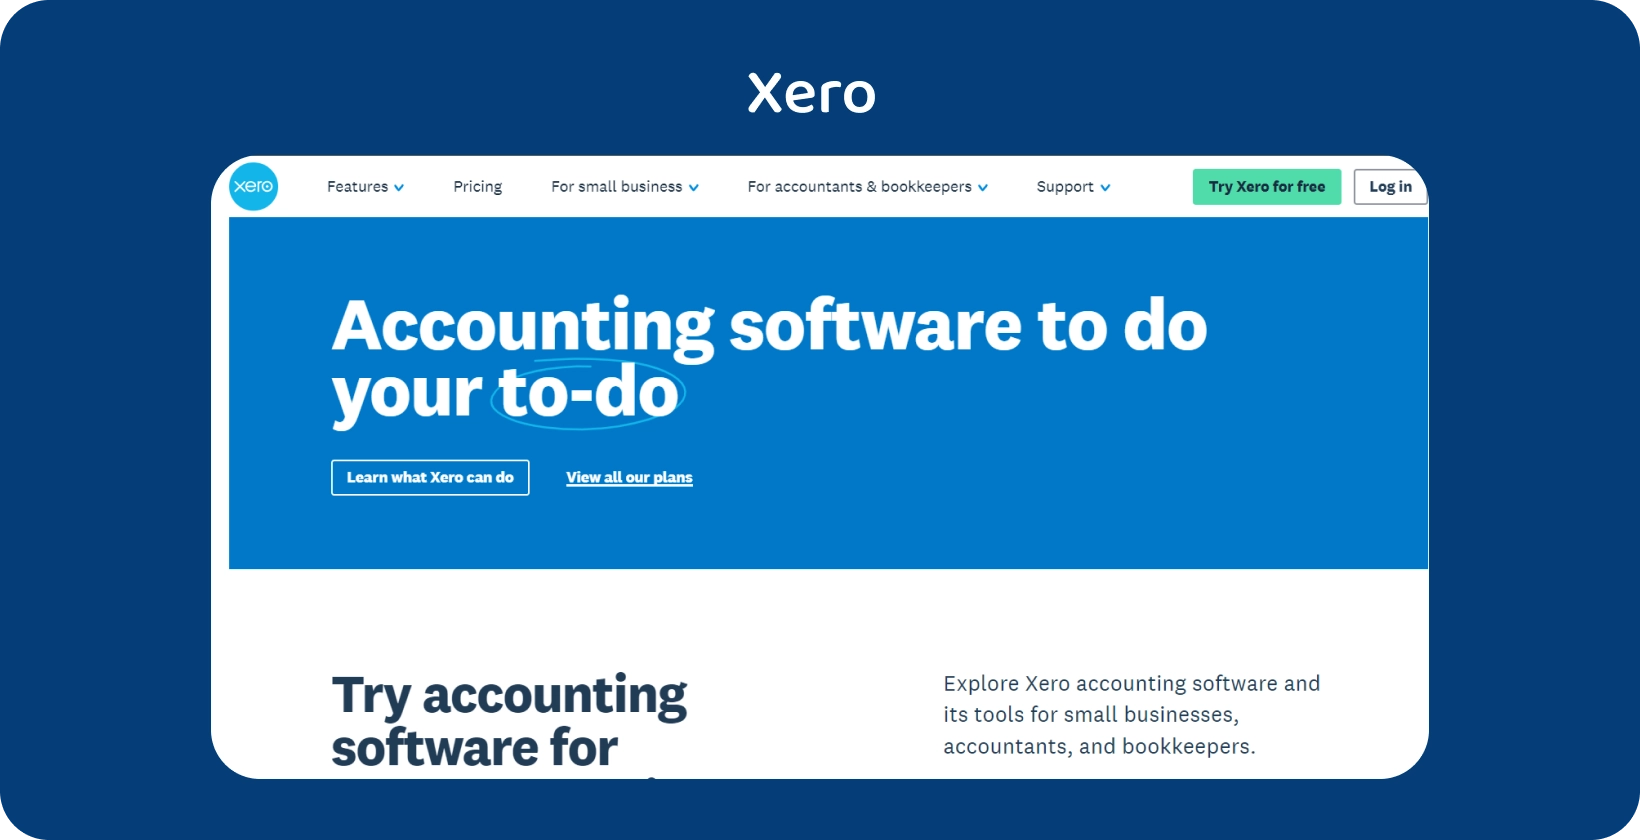 Interface moderna de software de contabilidade no site da Xero, mostrando facilidade para gerenciar tarefas financeiras.